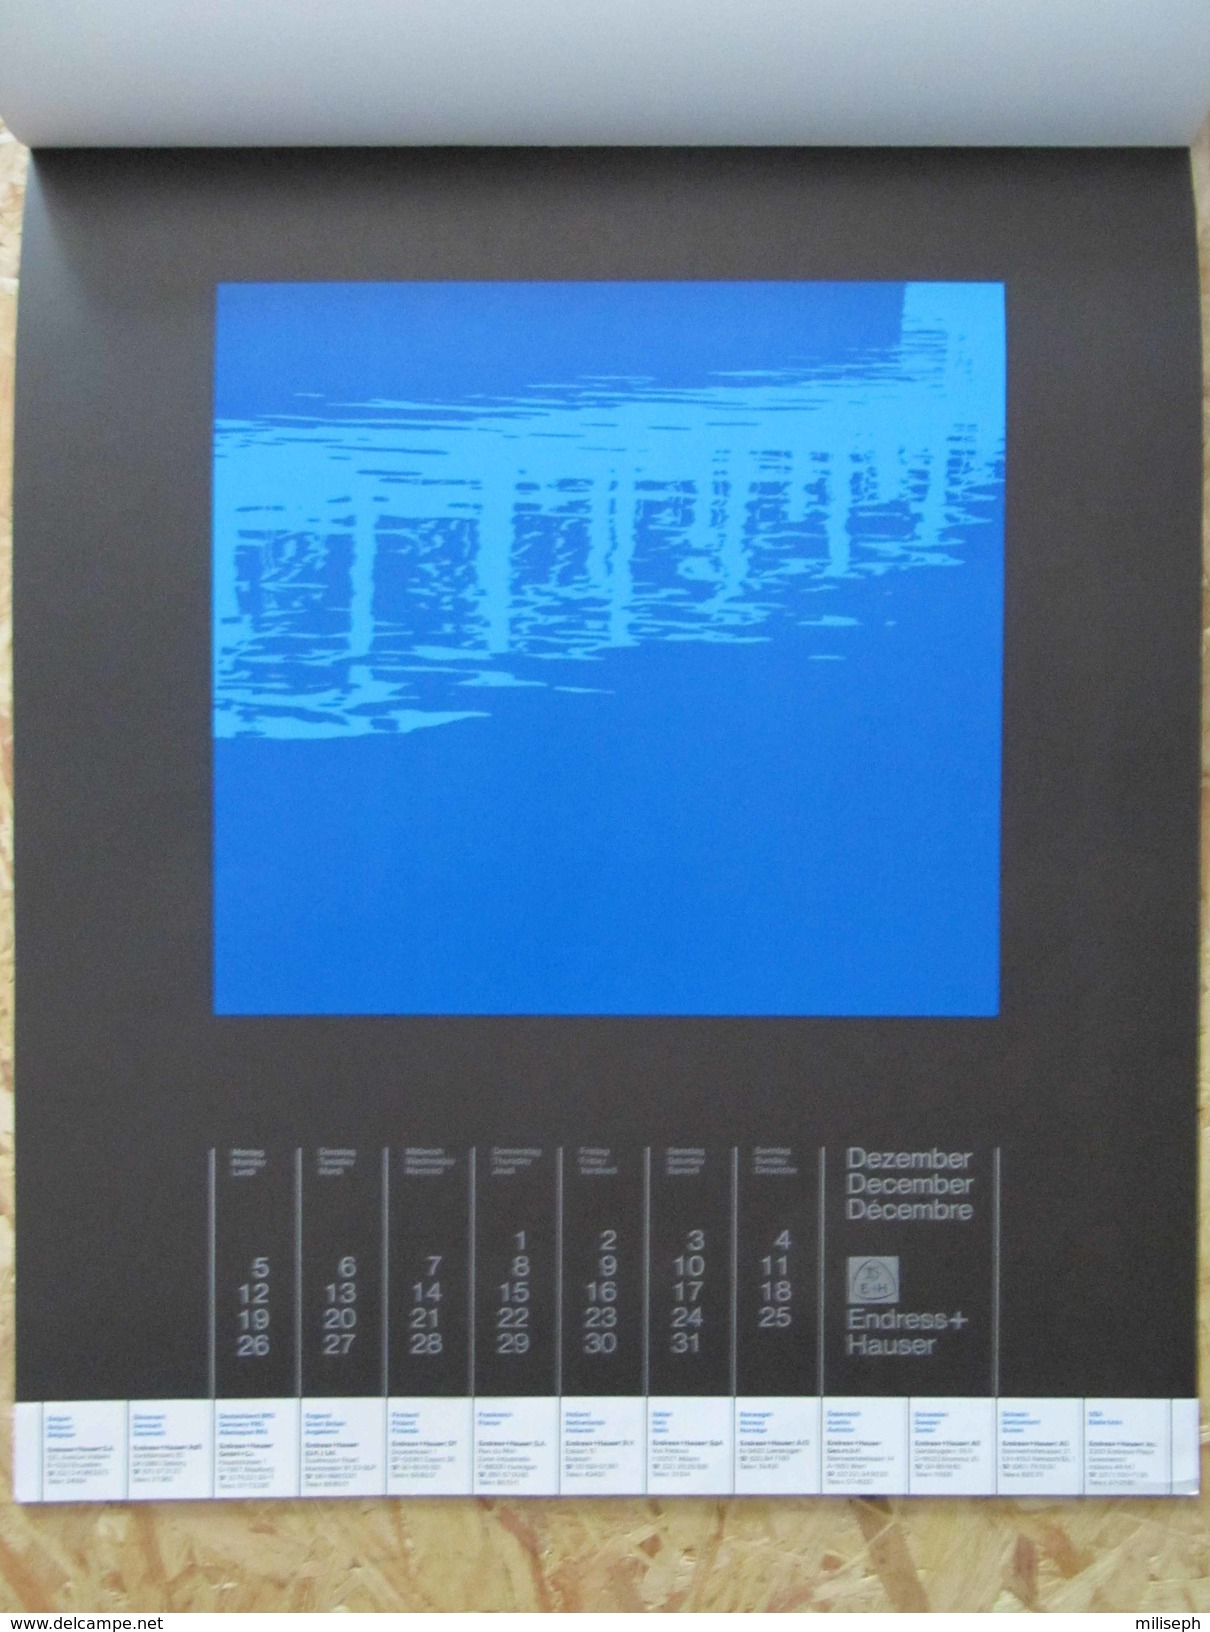 Calendrier de la société Suisse ENDRESS + HAUSER - 1977 - Avec en plus 11 pages doubles découpées   (4401)